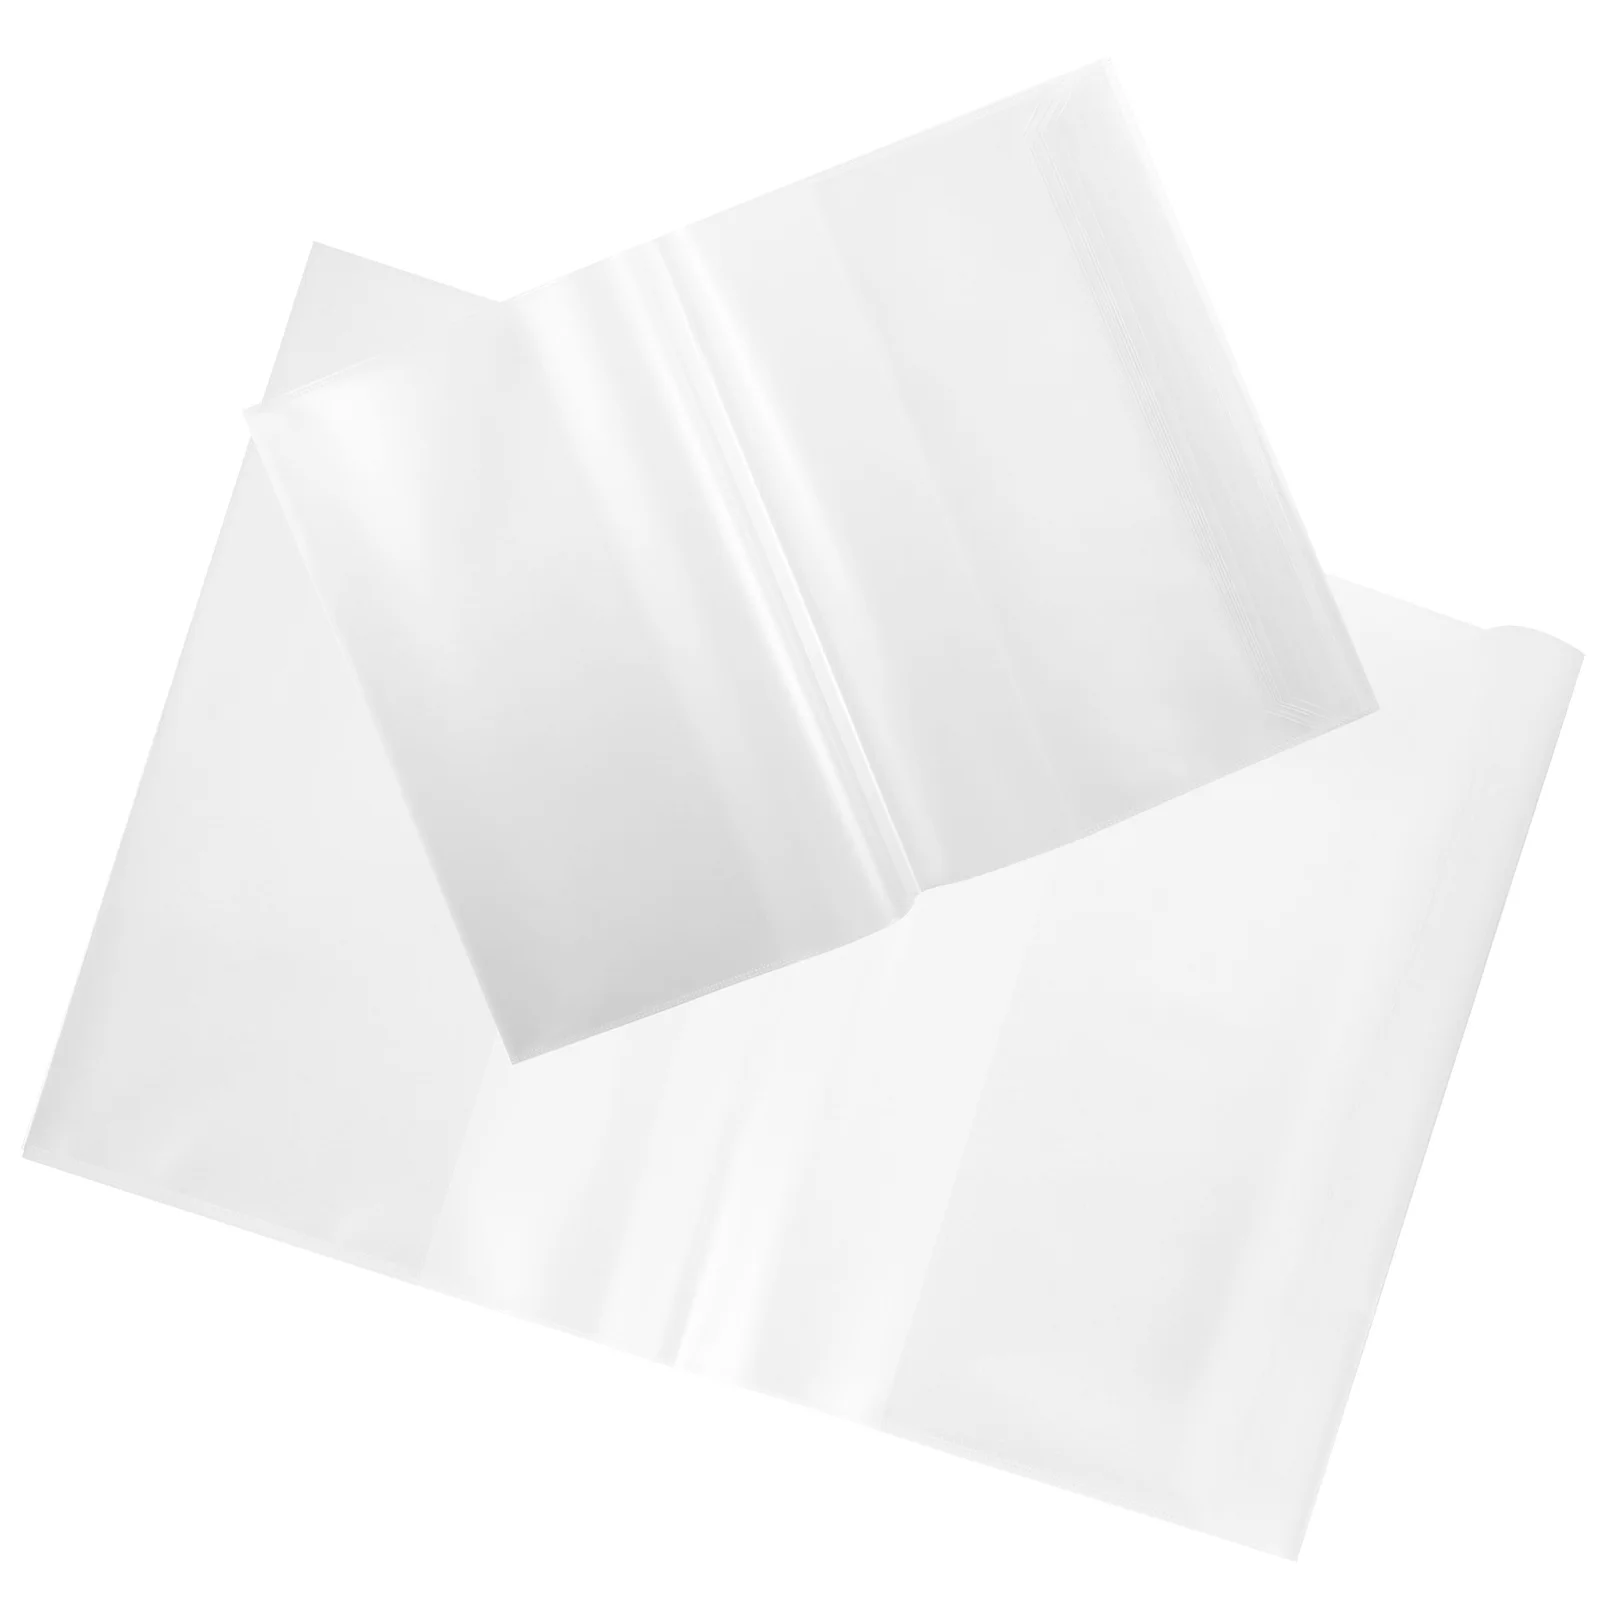 20 Шт Обложка для бухгалтерской книги формата А5, Прозрачная защитная пленка, Защита от царапин, Блокнот для студентов из полипропилена